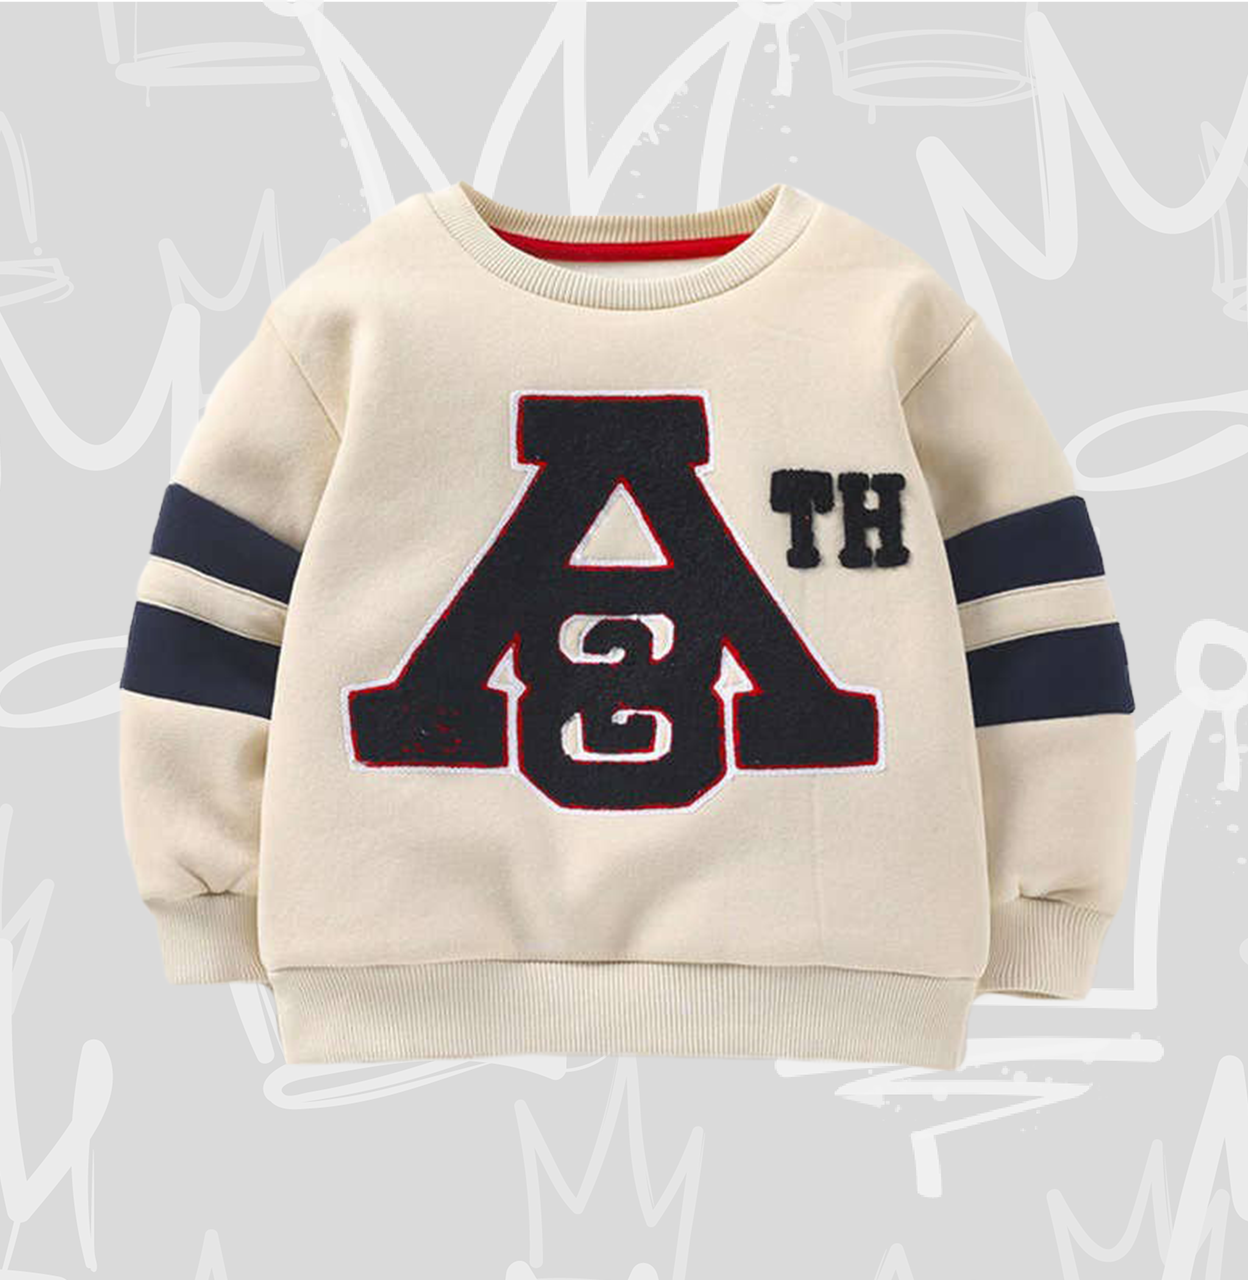 Letter "A" sweatshirt